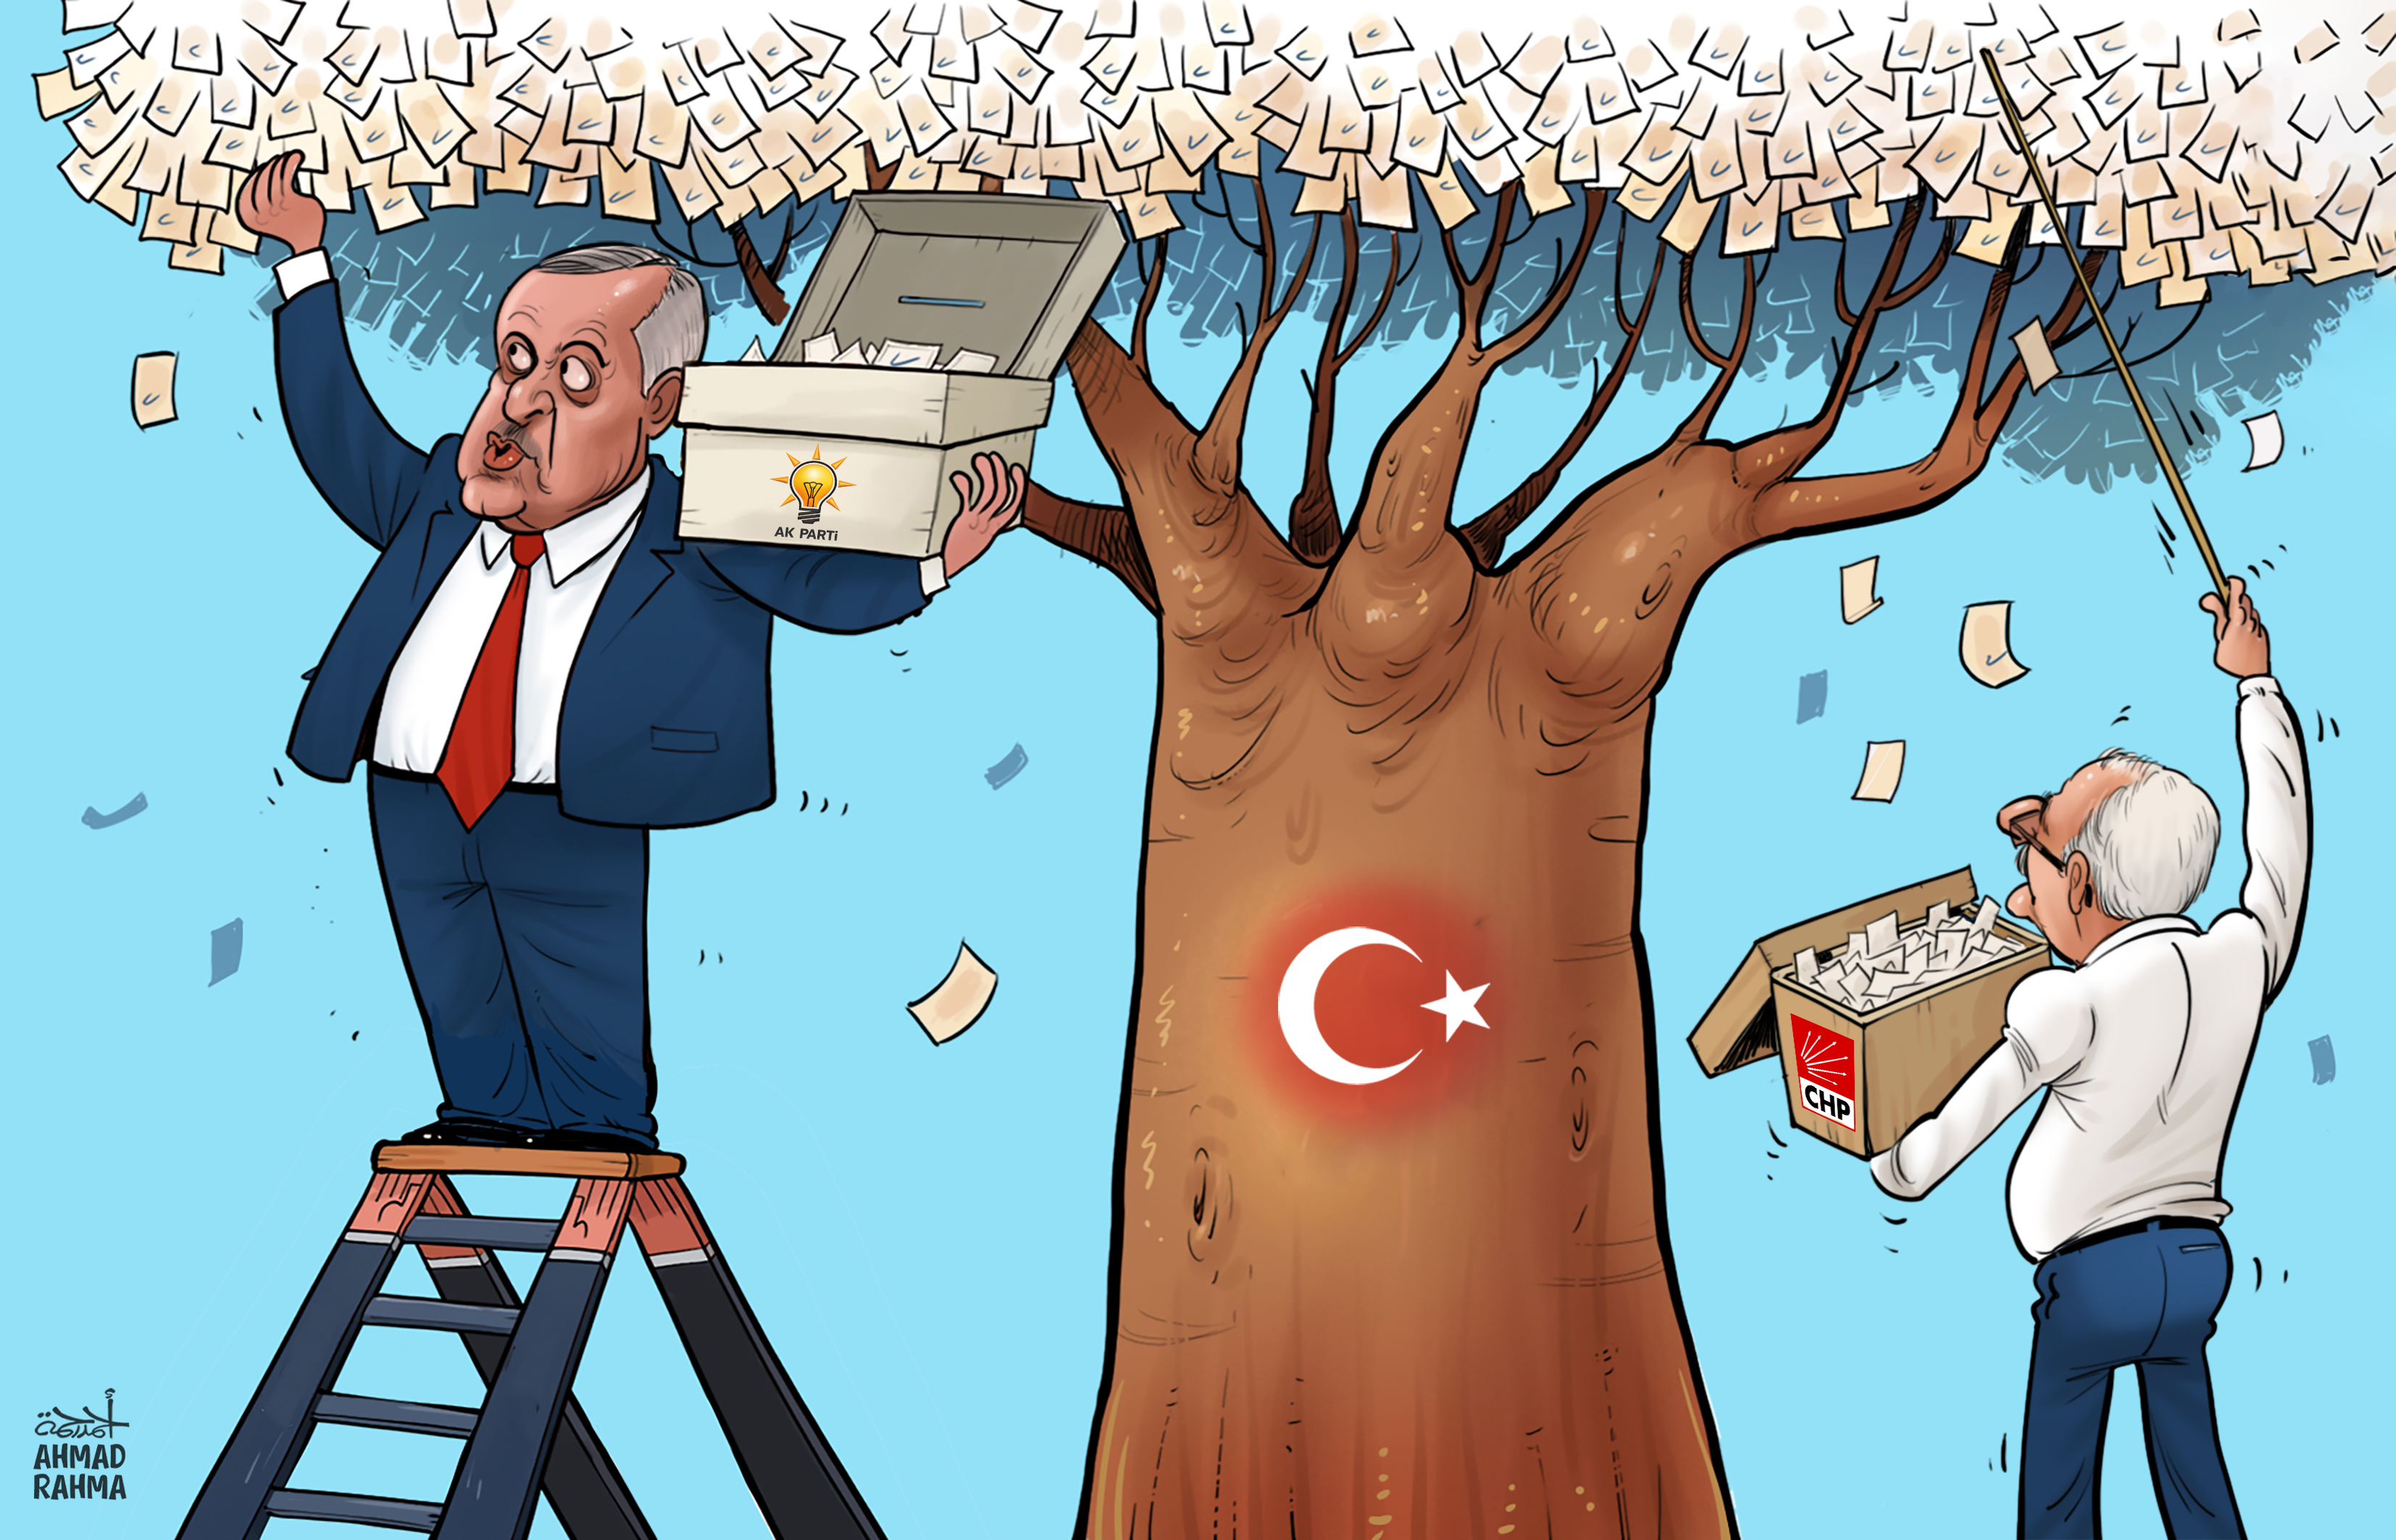 Erdogan à nouveau réelu à la tête de la Turquie